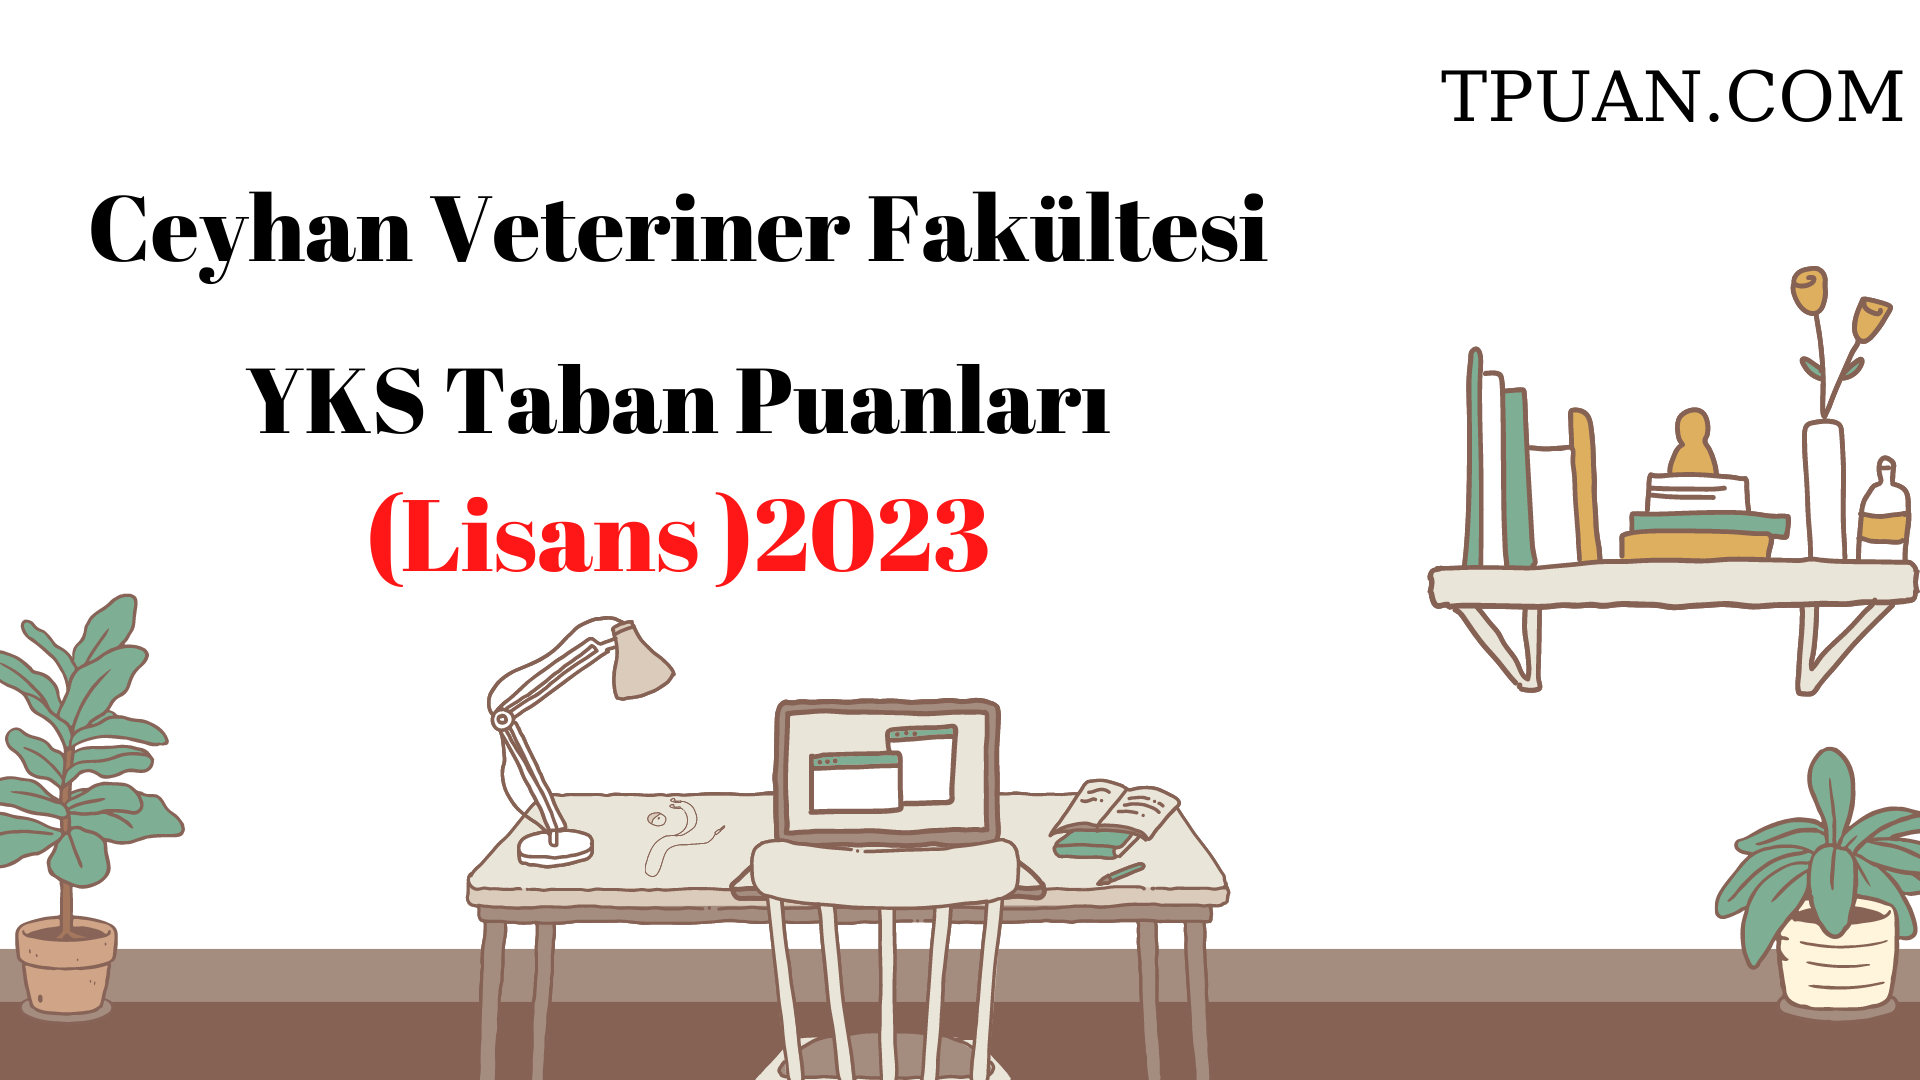  Ceyhan Veteriner Fakültesi Bölümü YKS Taban Puanları (4 Yıllık) 2023